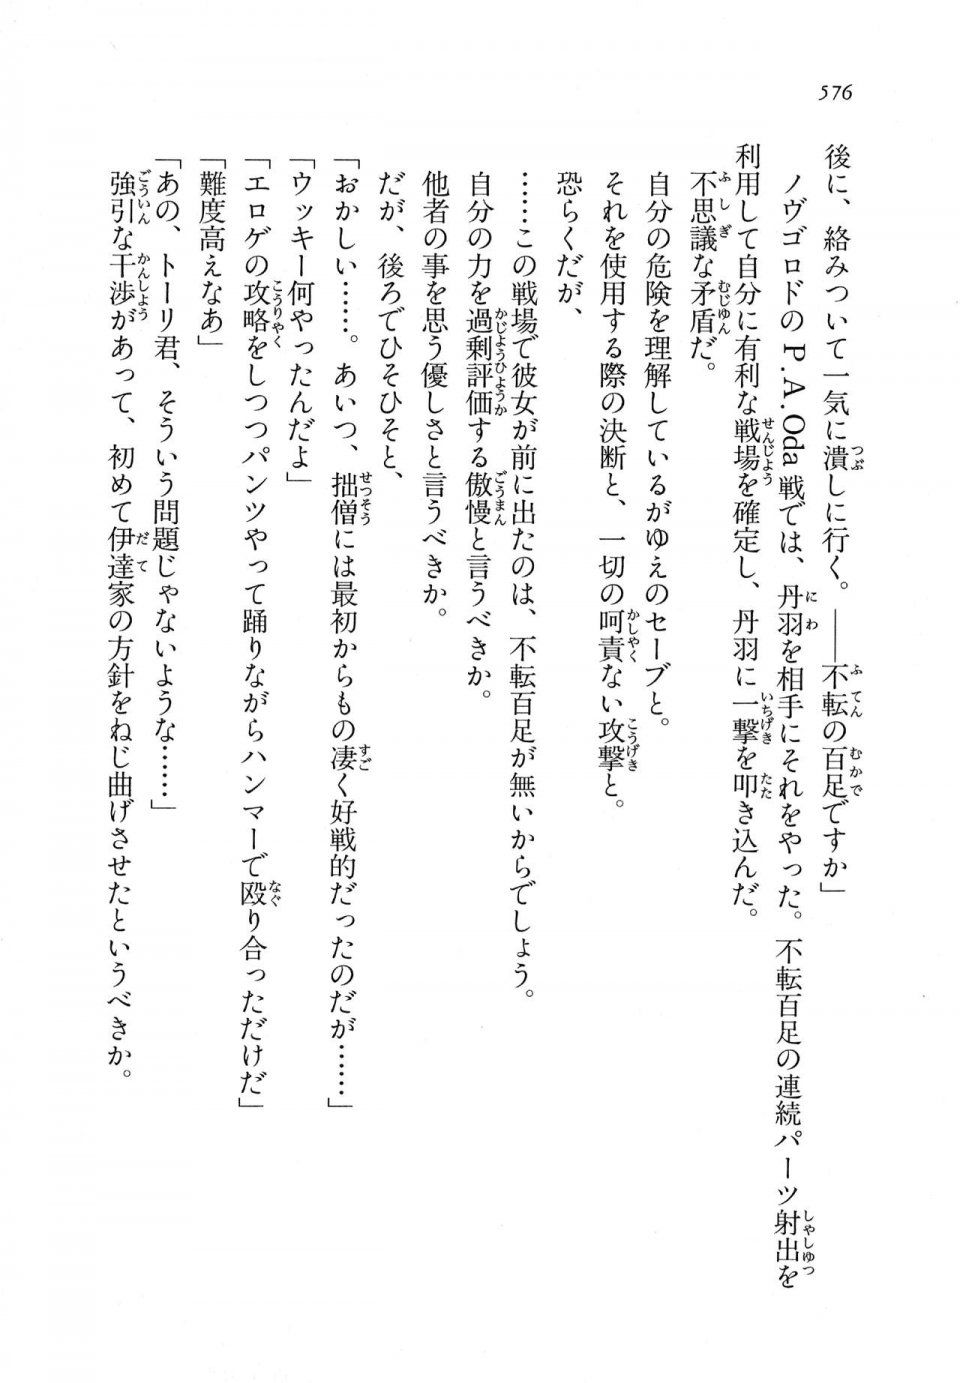 Kyoukai Senjou no Horizon LN Vol 11(5A) - Photo #576